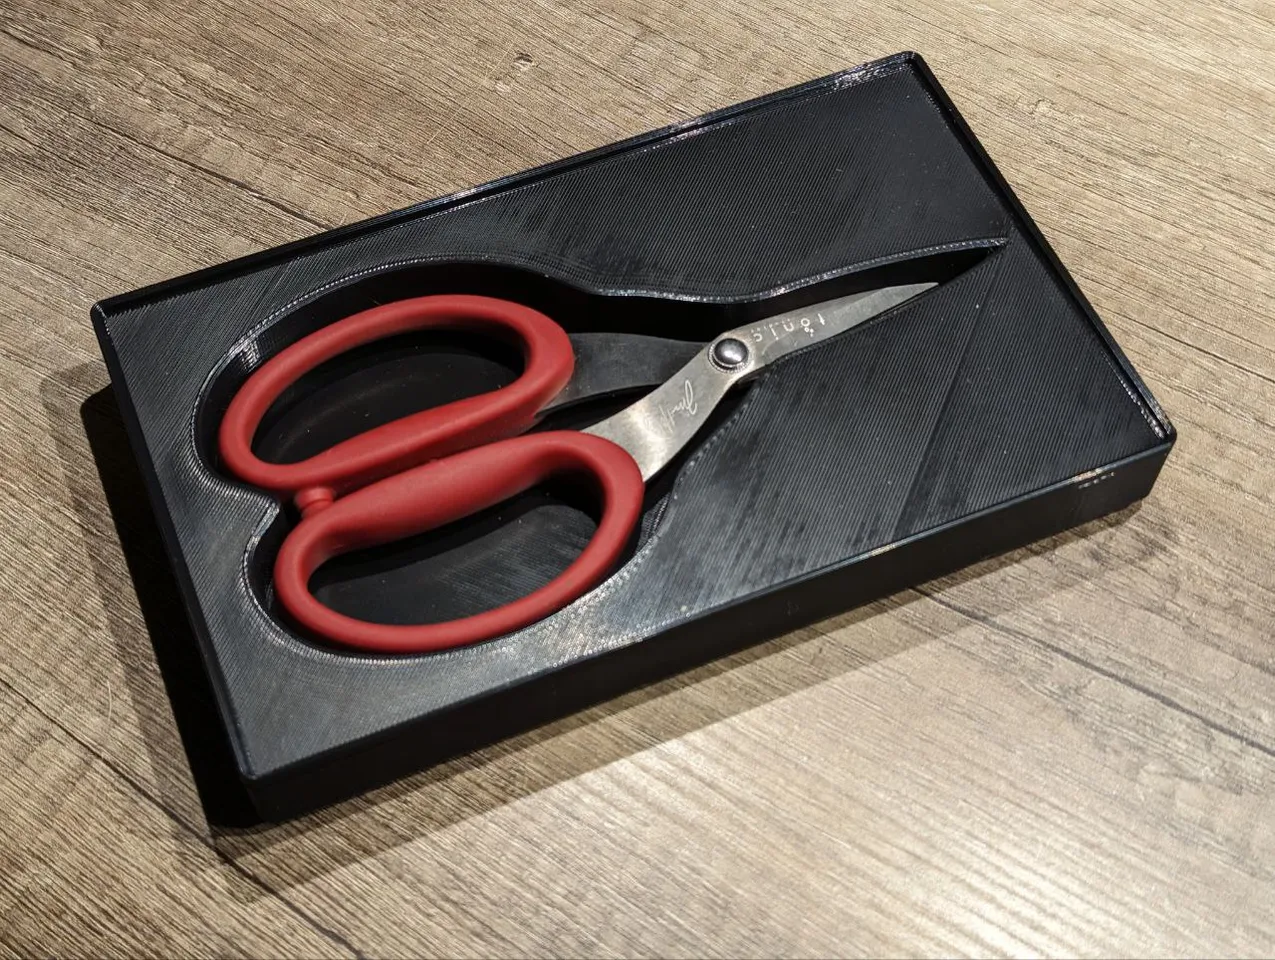 Tonic Tools - 5 Mini Snips Scissors by Tim Holtz